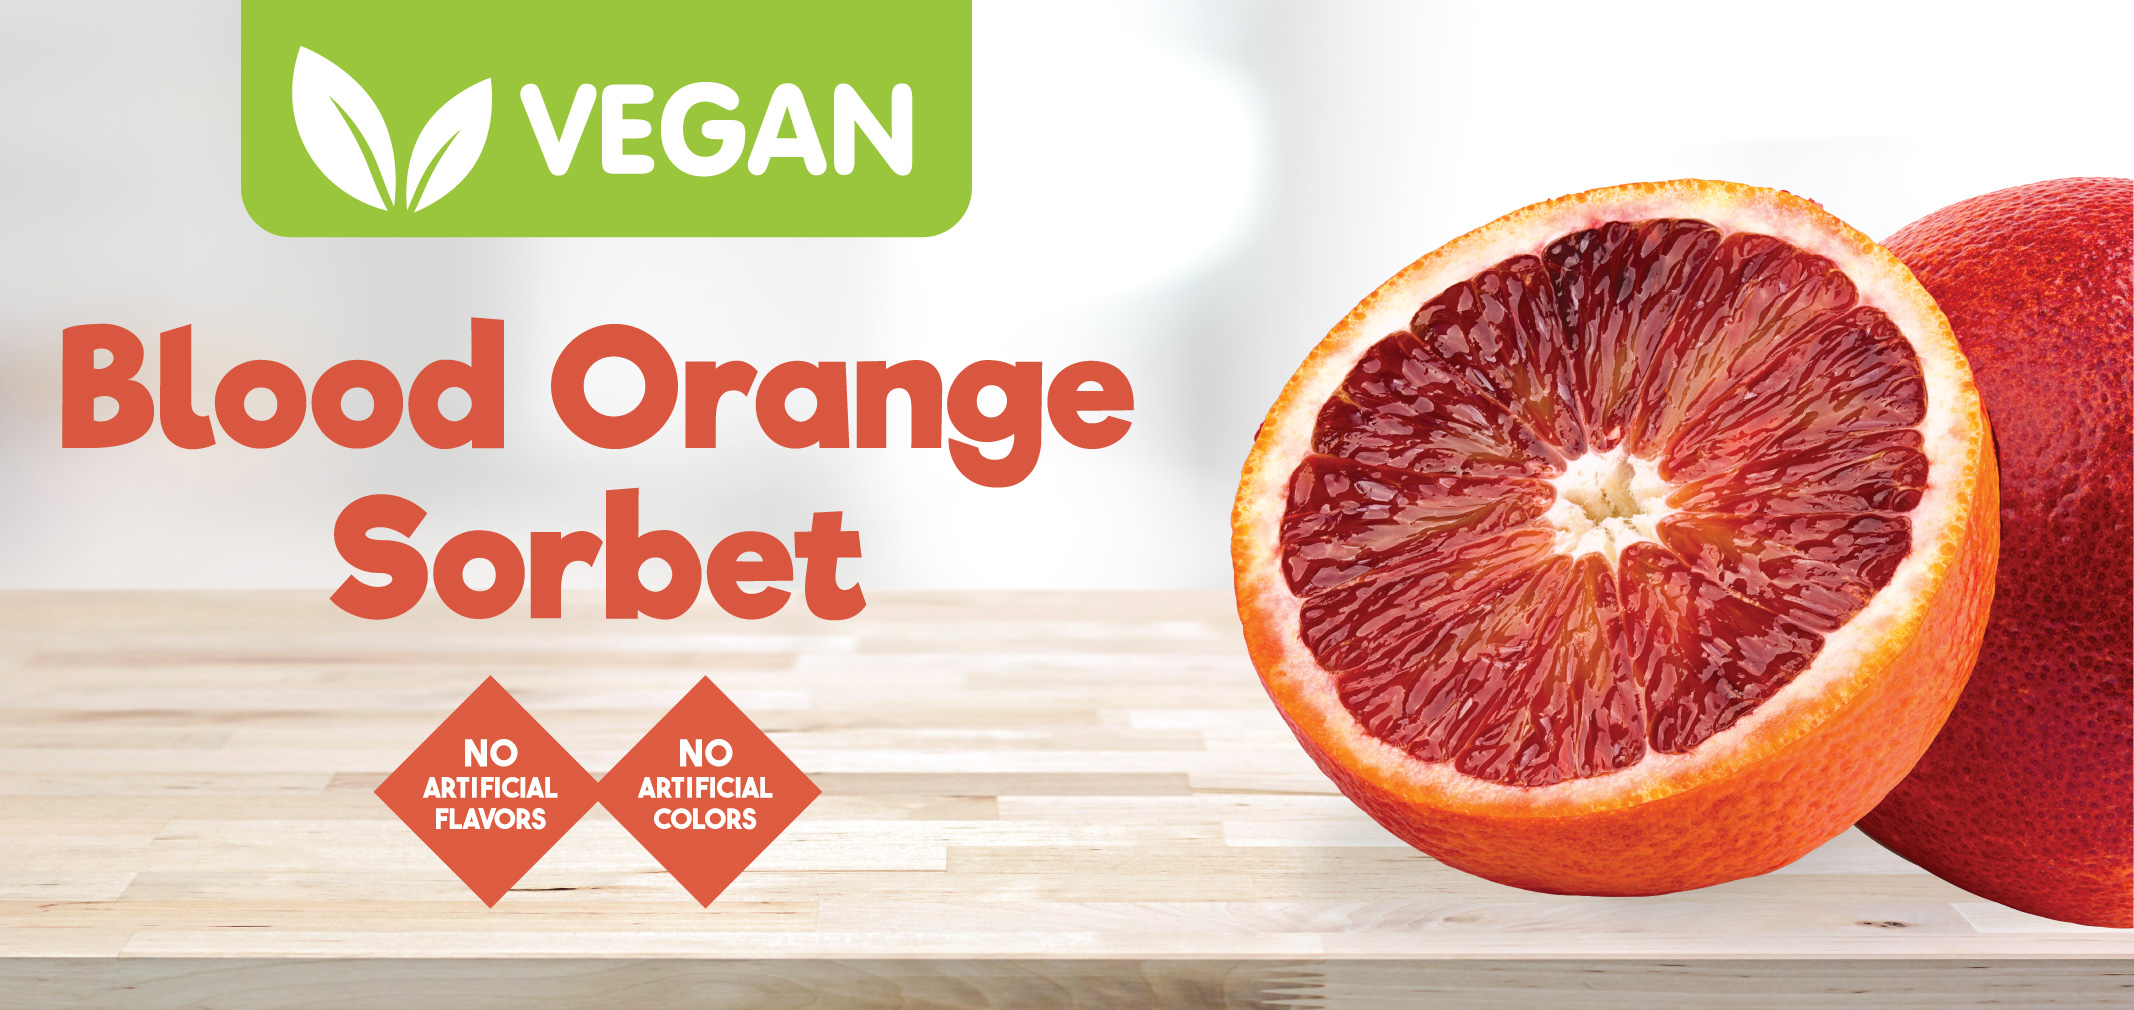 blood orange sorbet label image